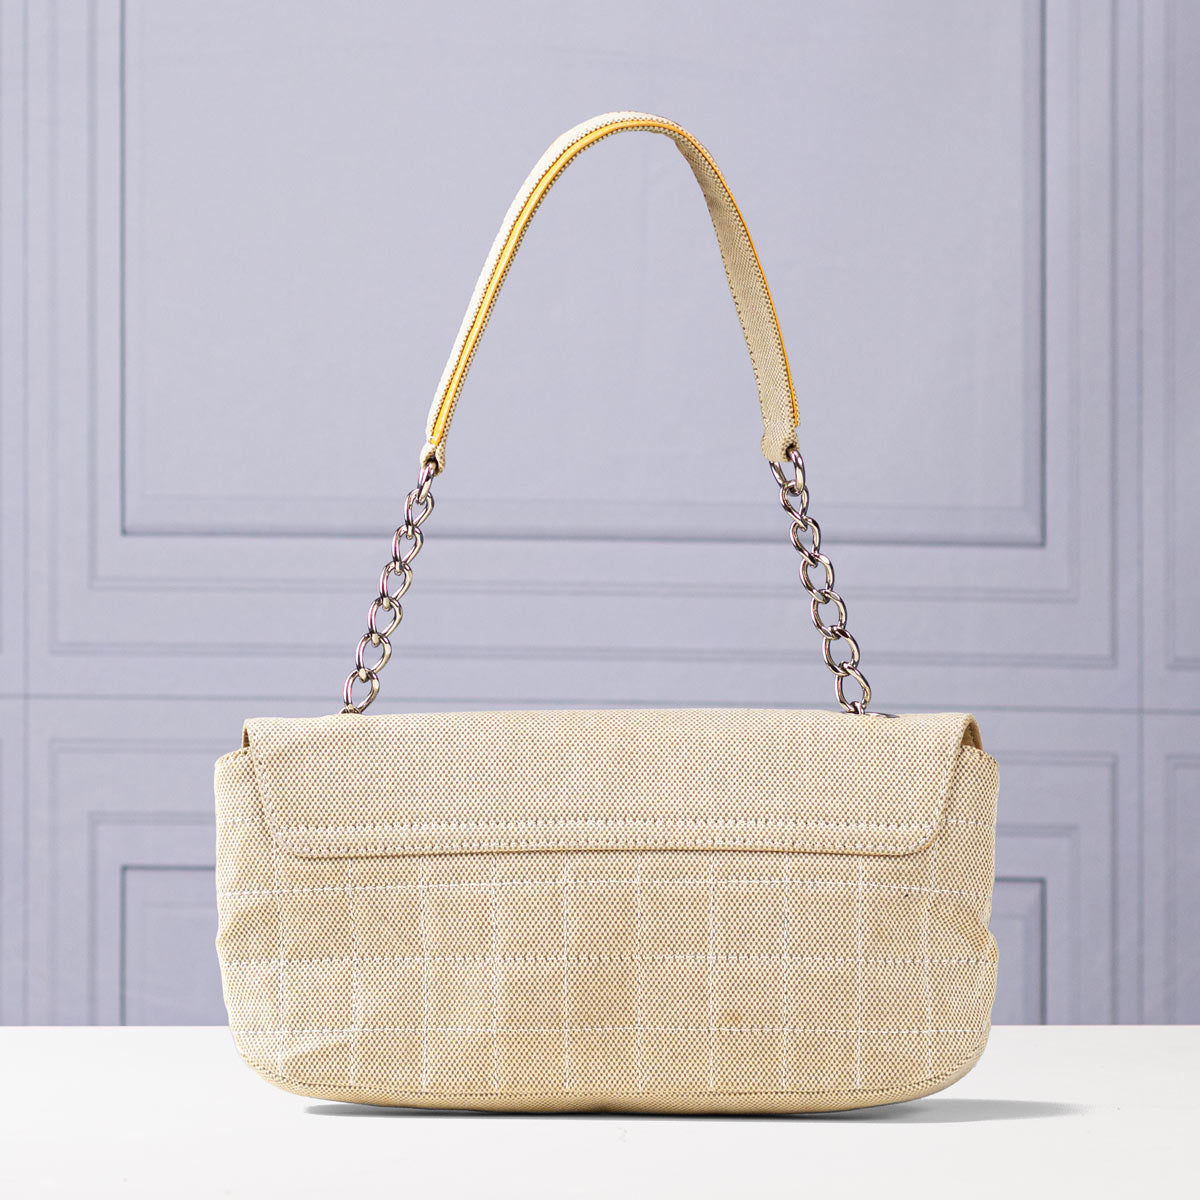 Chanel No.5 Camellia Flap Bag